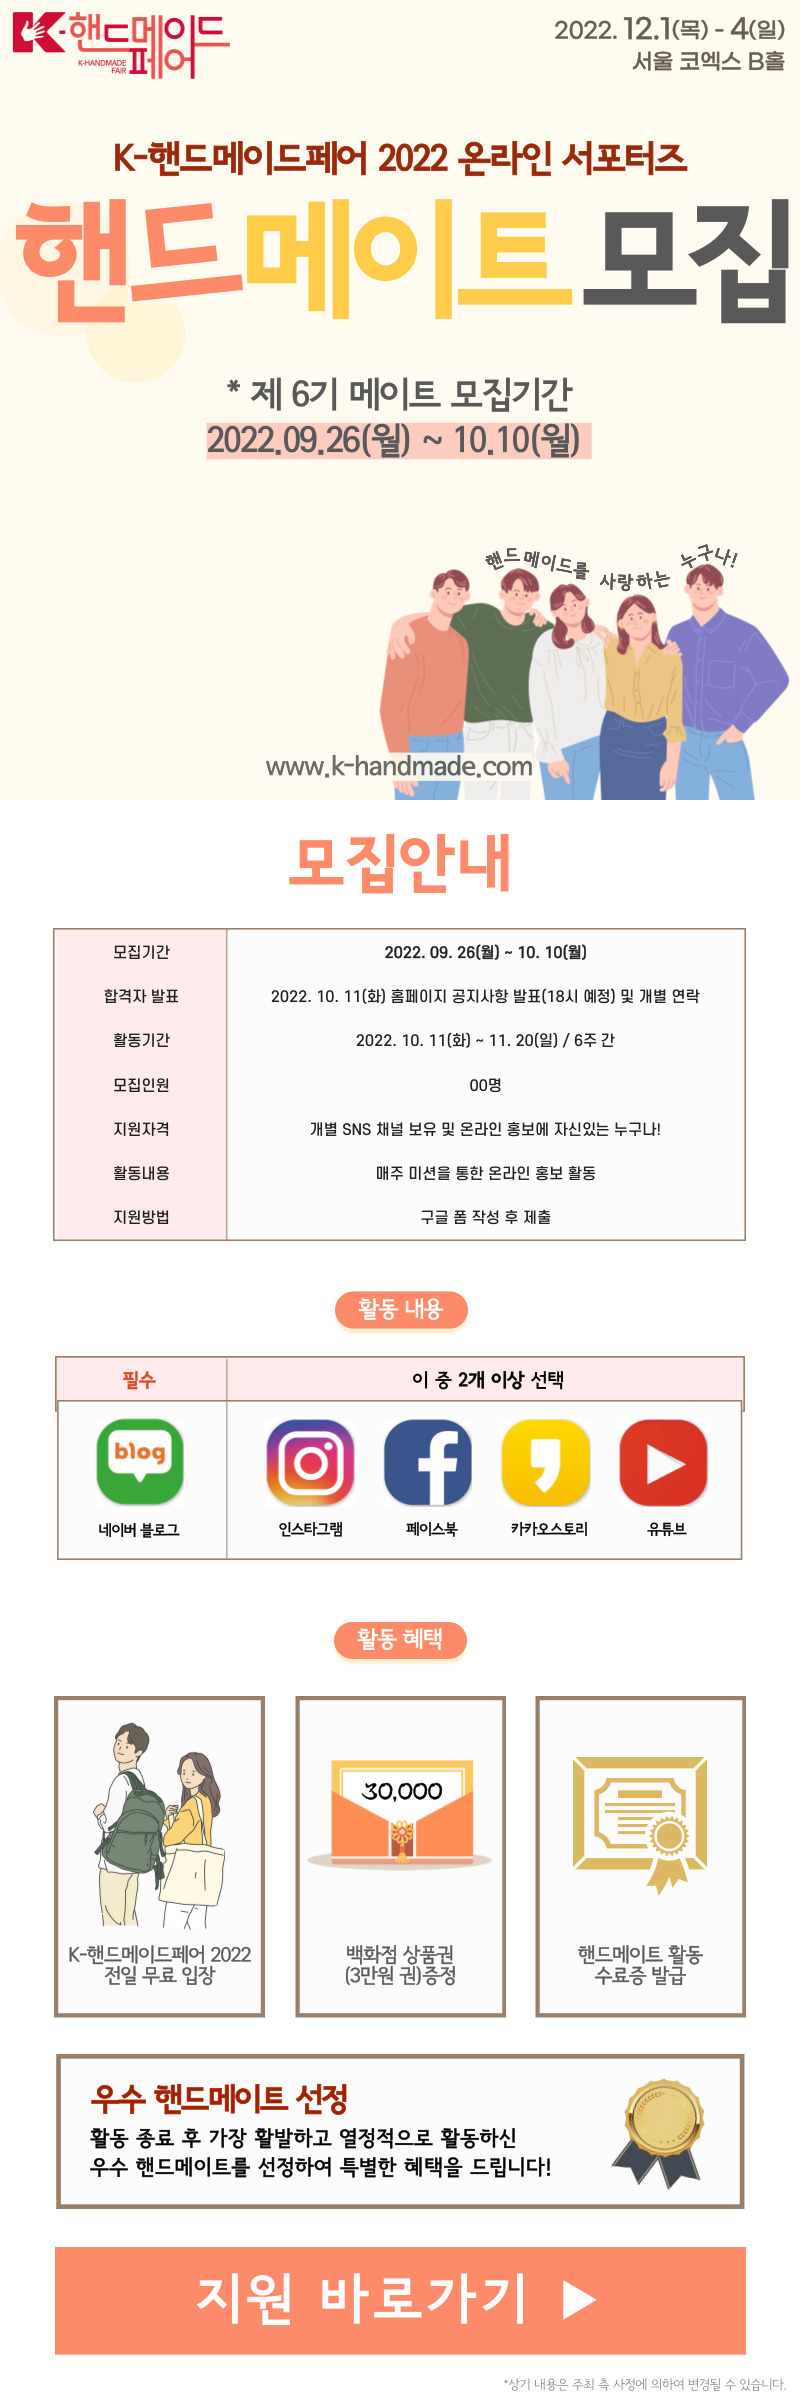 K-핸드메이드페어 2022 온라인 서포터즈 모집